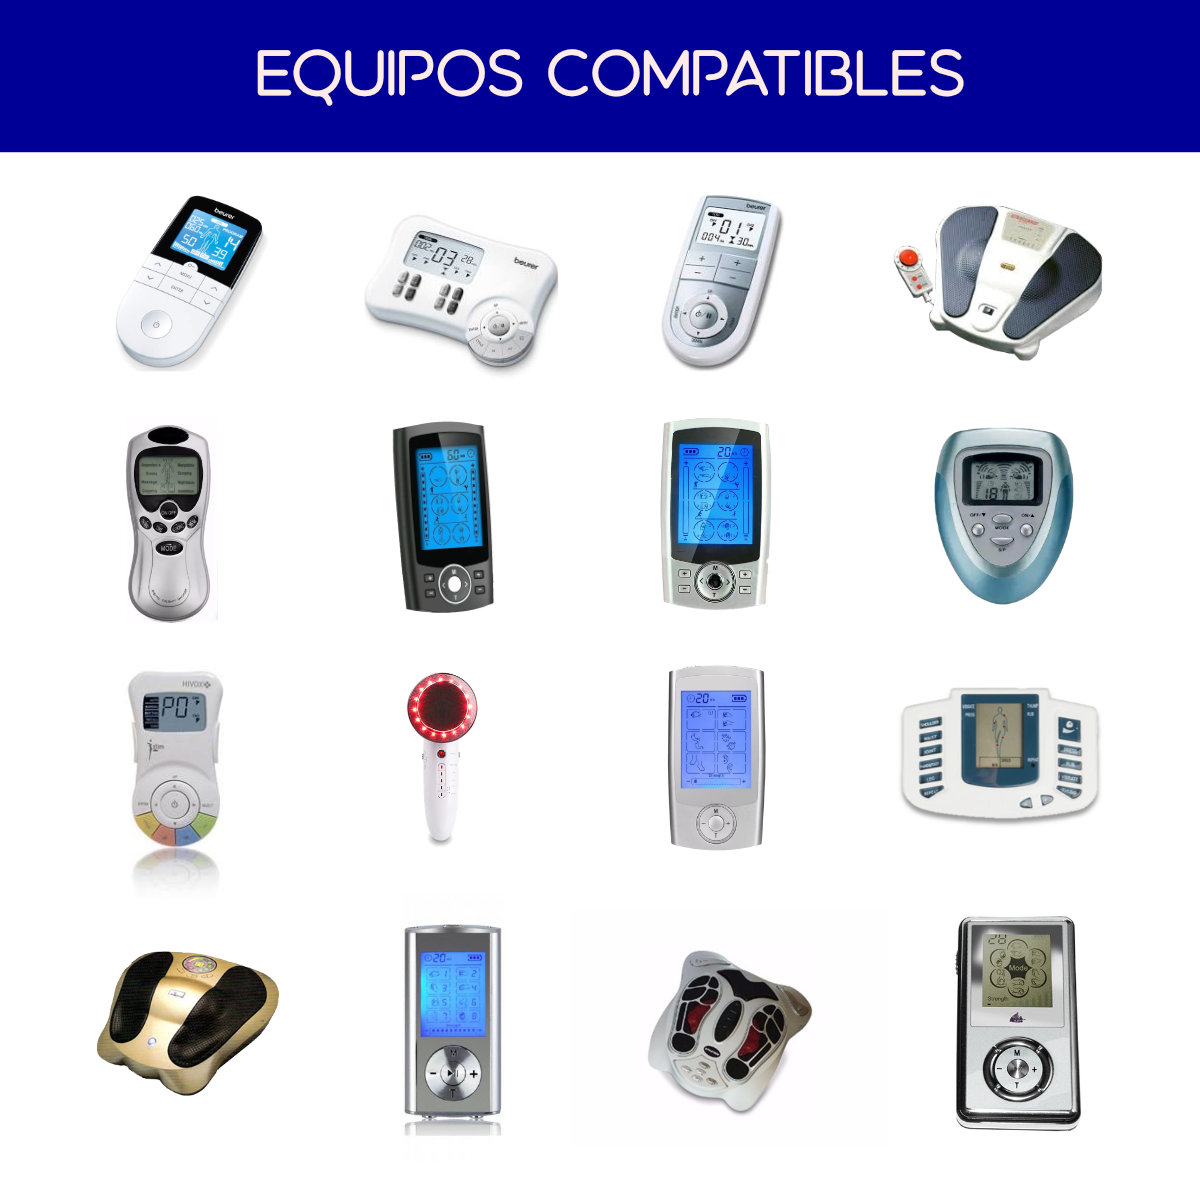 20 electrodos - 5x5 cm compatible con los aparatos